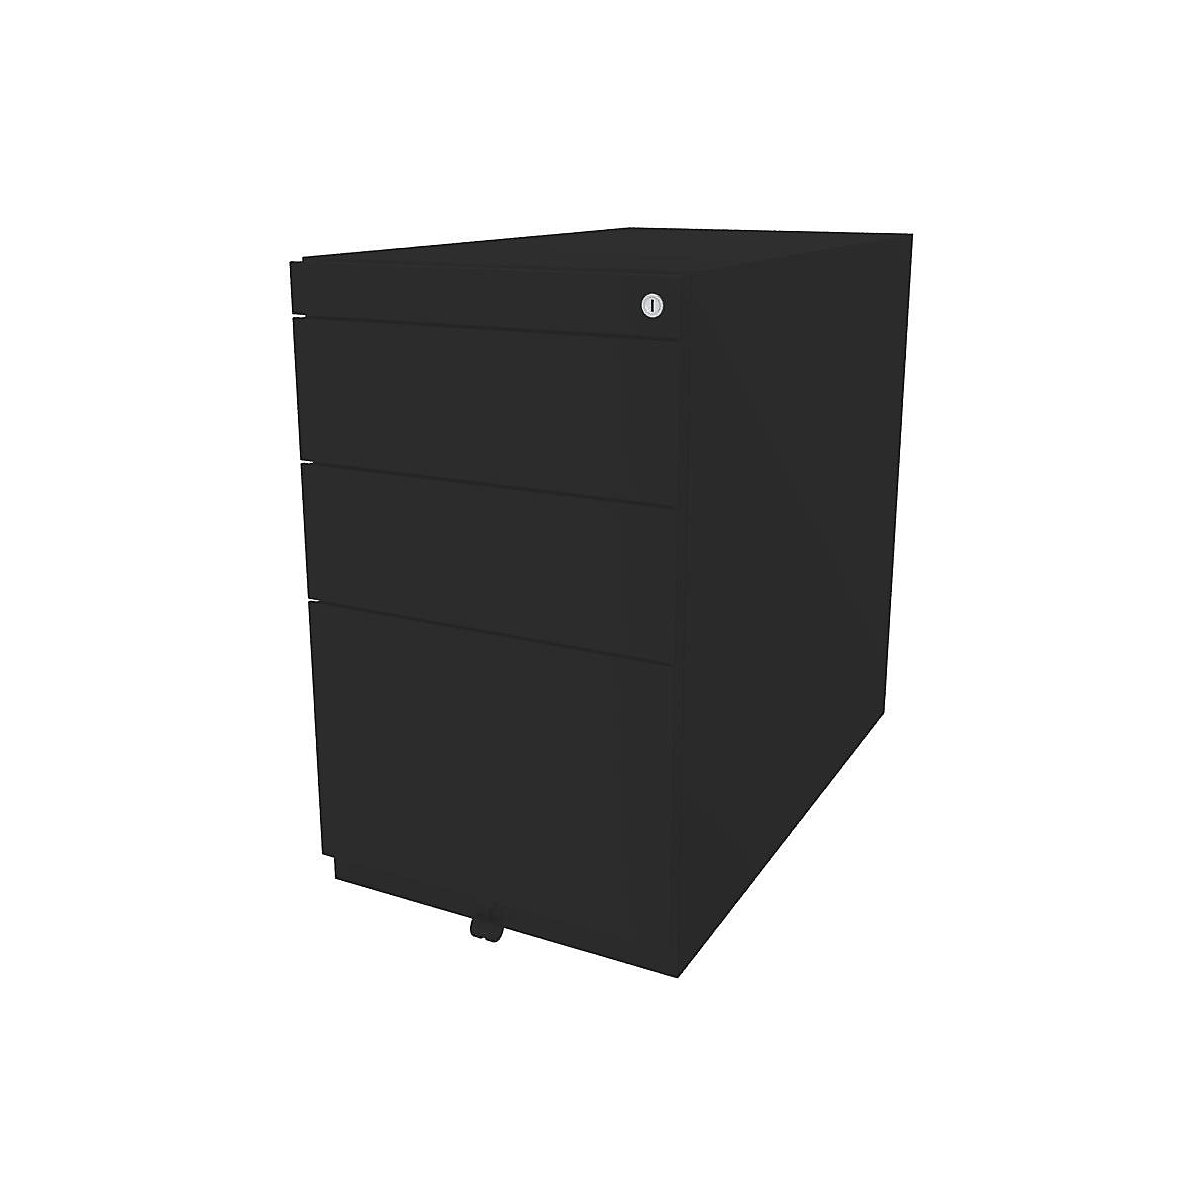 Caisson fixe Note™, avec 2 tiroirs universels, 1 tiroir pour dossiers suspendus – BISLEY, sans plateau de finition, prof. 775 mm, noir-4